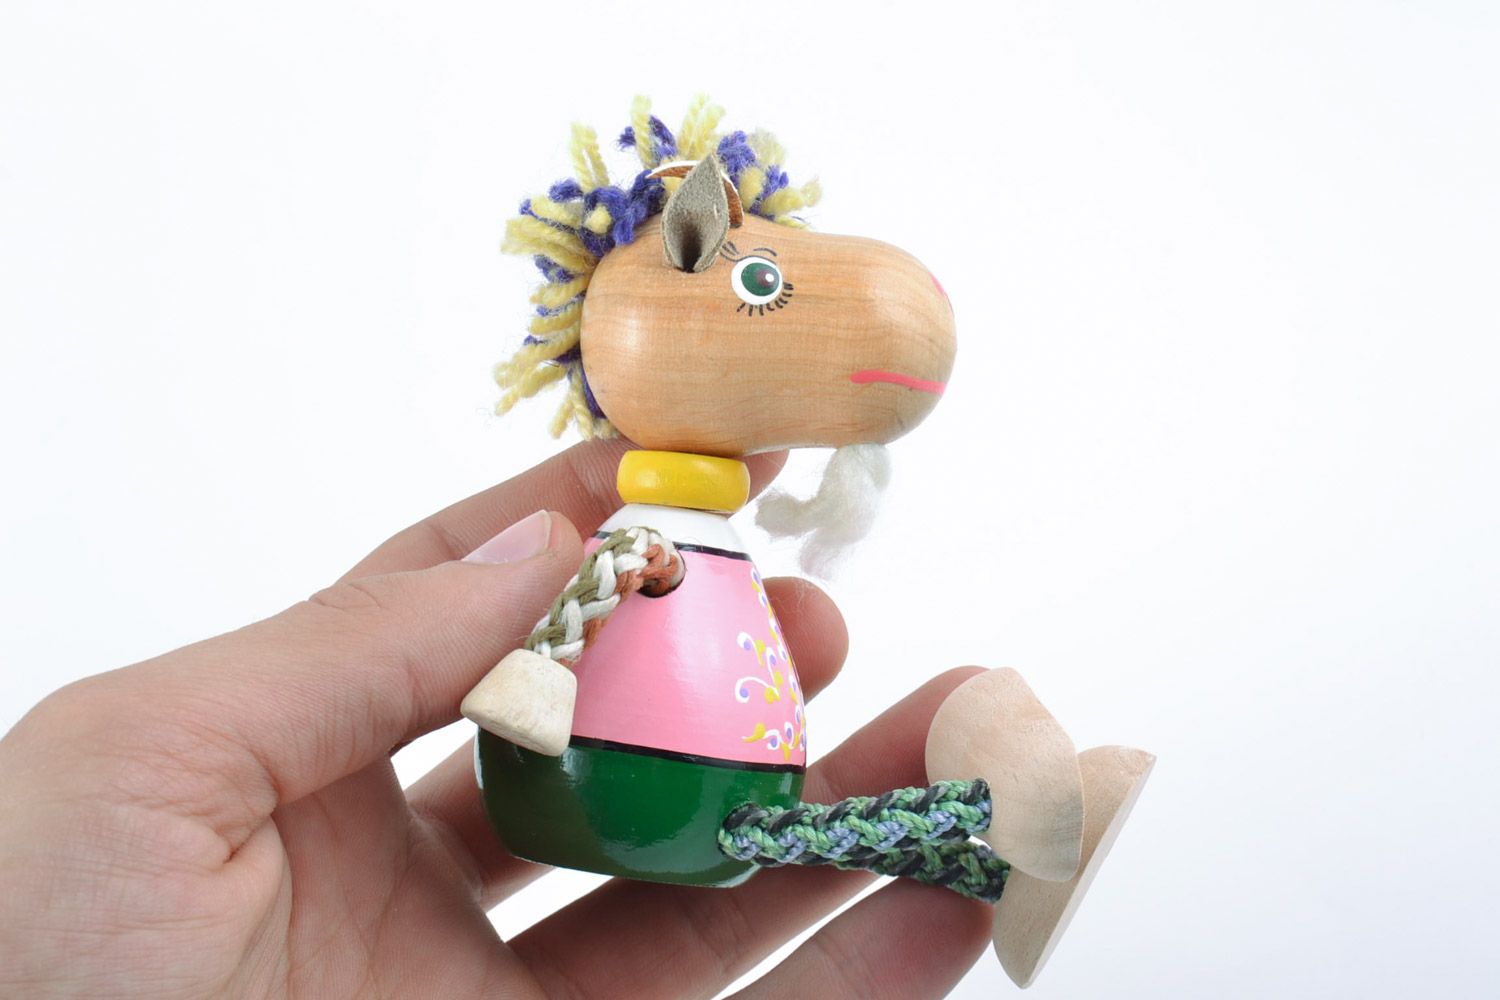 Деревянная игрушка в виде козлика ручной работы расписанная эко красками фото 2